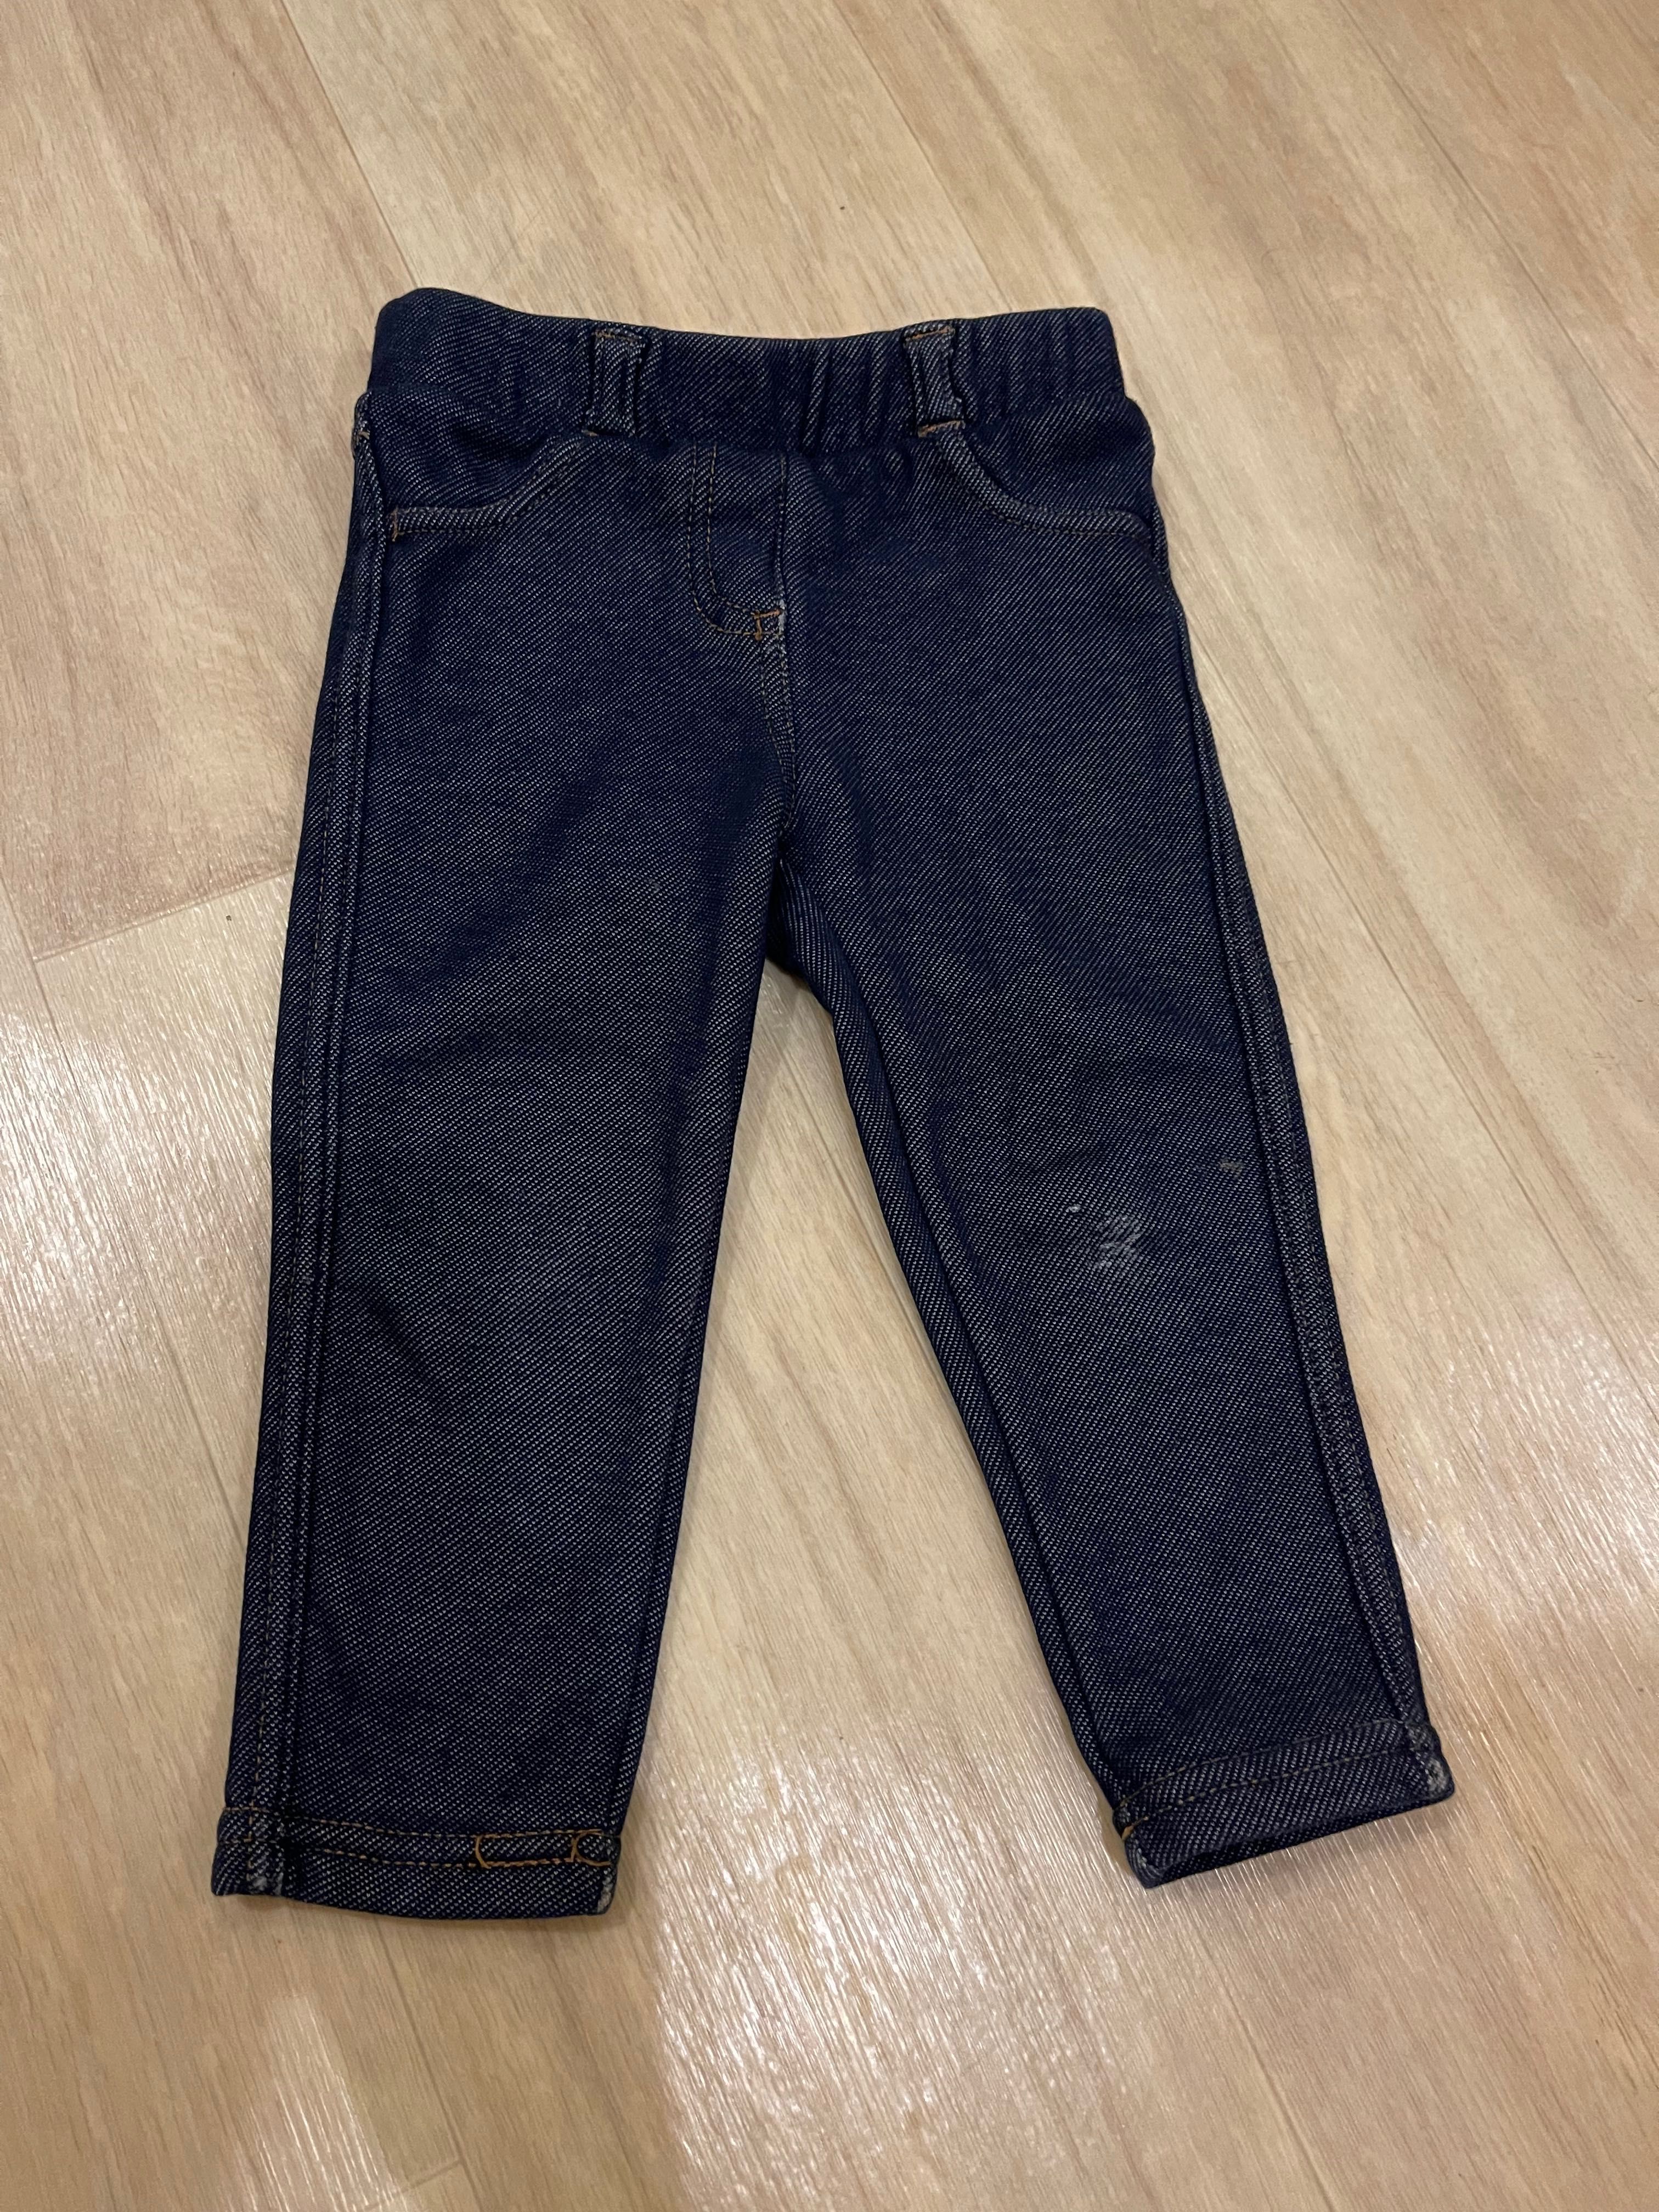 Теплые штаны на флисе джинсы детские на девочку джеггинсы 80 86 92